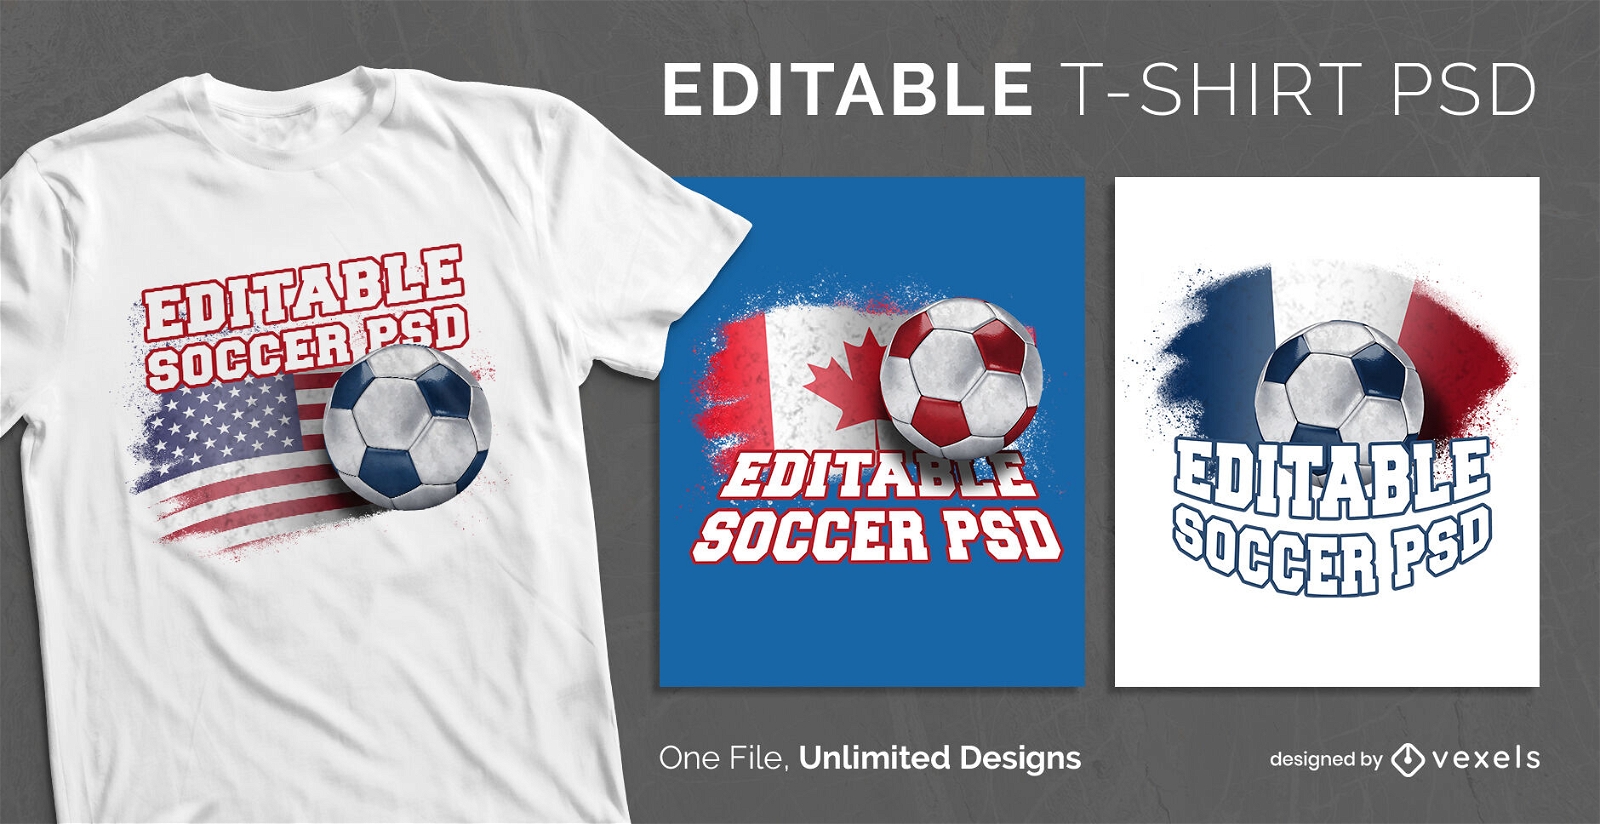 Fußballanzeige kennzeichnet skalierbares PSD-T-Shirt